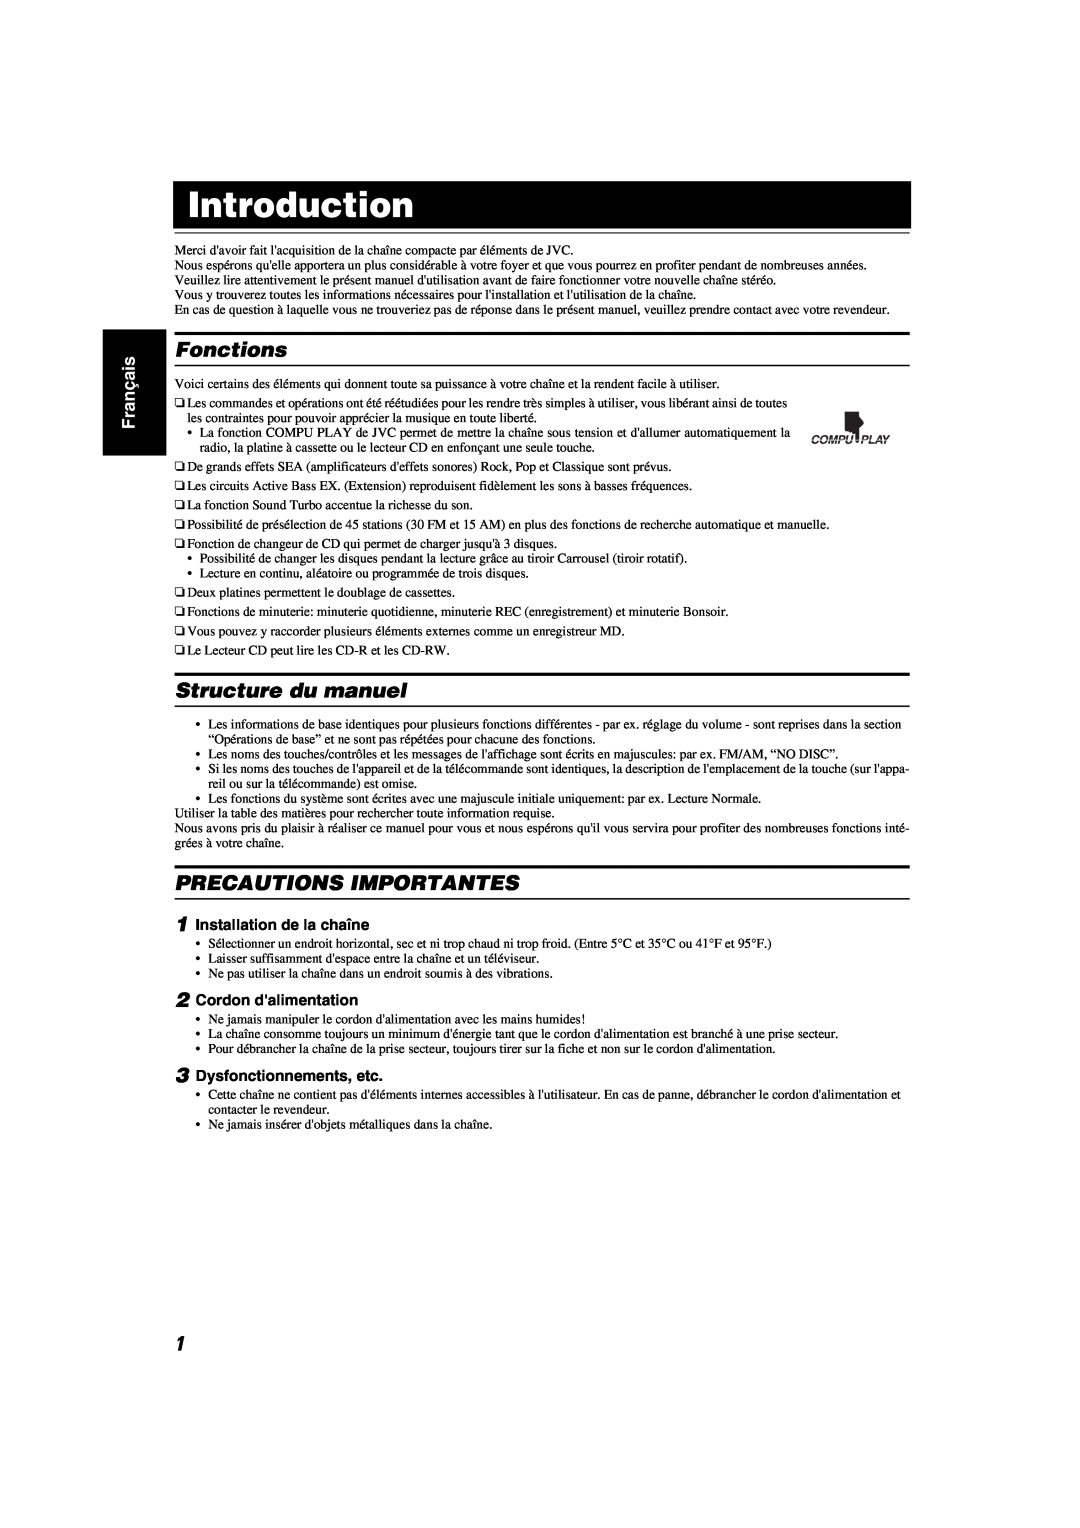 JVC MX-KA6 manual Introduction, Fonctions, Structure du manuel, Precautions Importantes, Français 